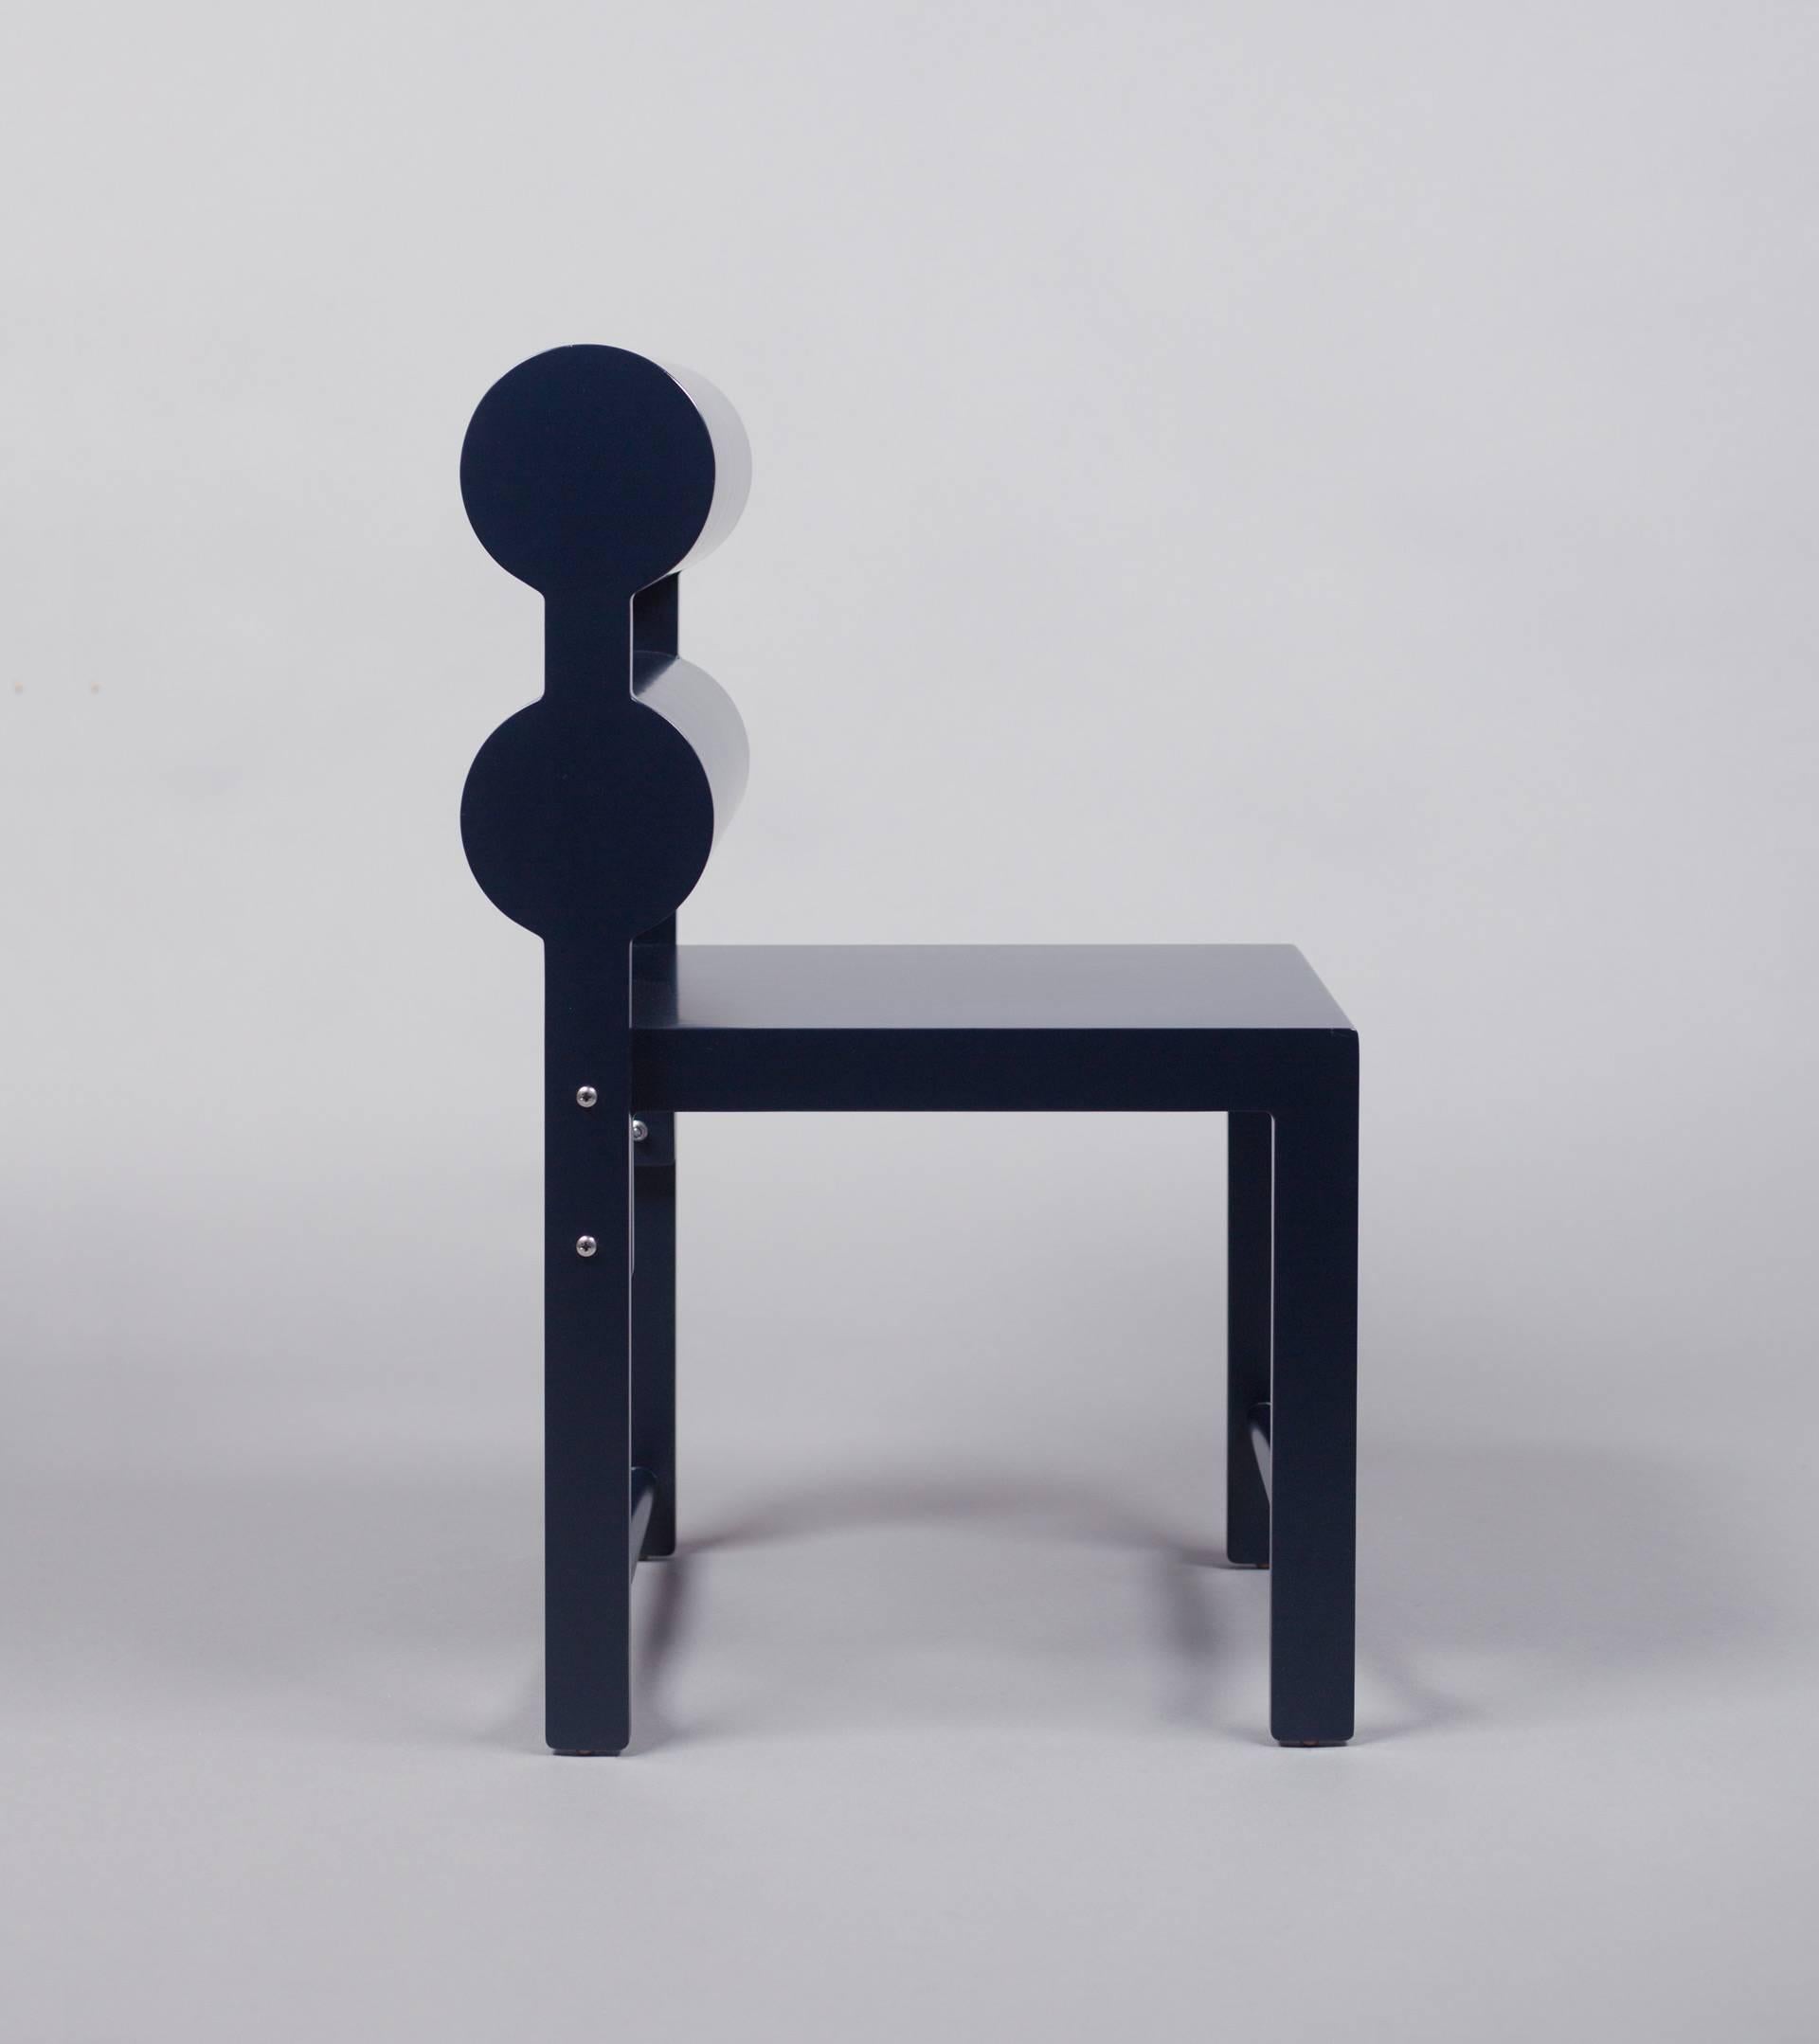 Die bequeme und leichte Sitzmöbelserie Waka Waka ist eine Erkundung bekannter Stuhlmodelle, die überarbeitet wurden, um die Möglichkeiten von übertriebenen Linien, Volumen und funktionalen Anforderungen aufzuzeigen. Da Rechtecke in der Regel mit